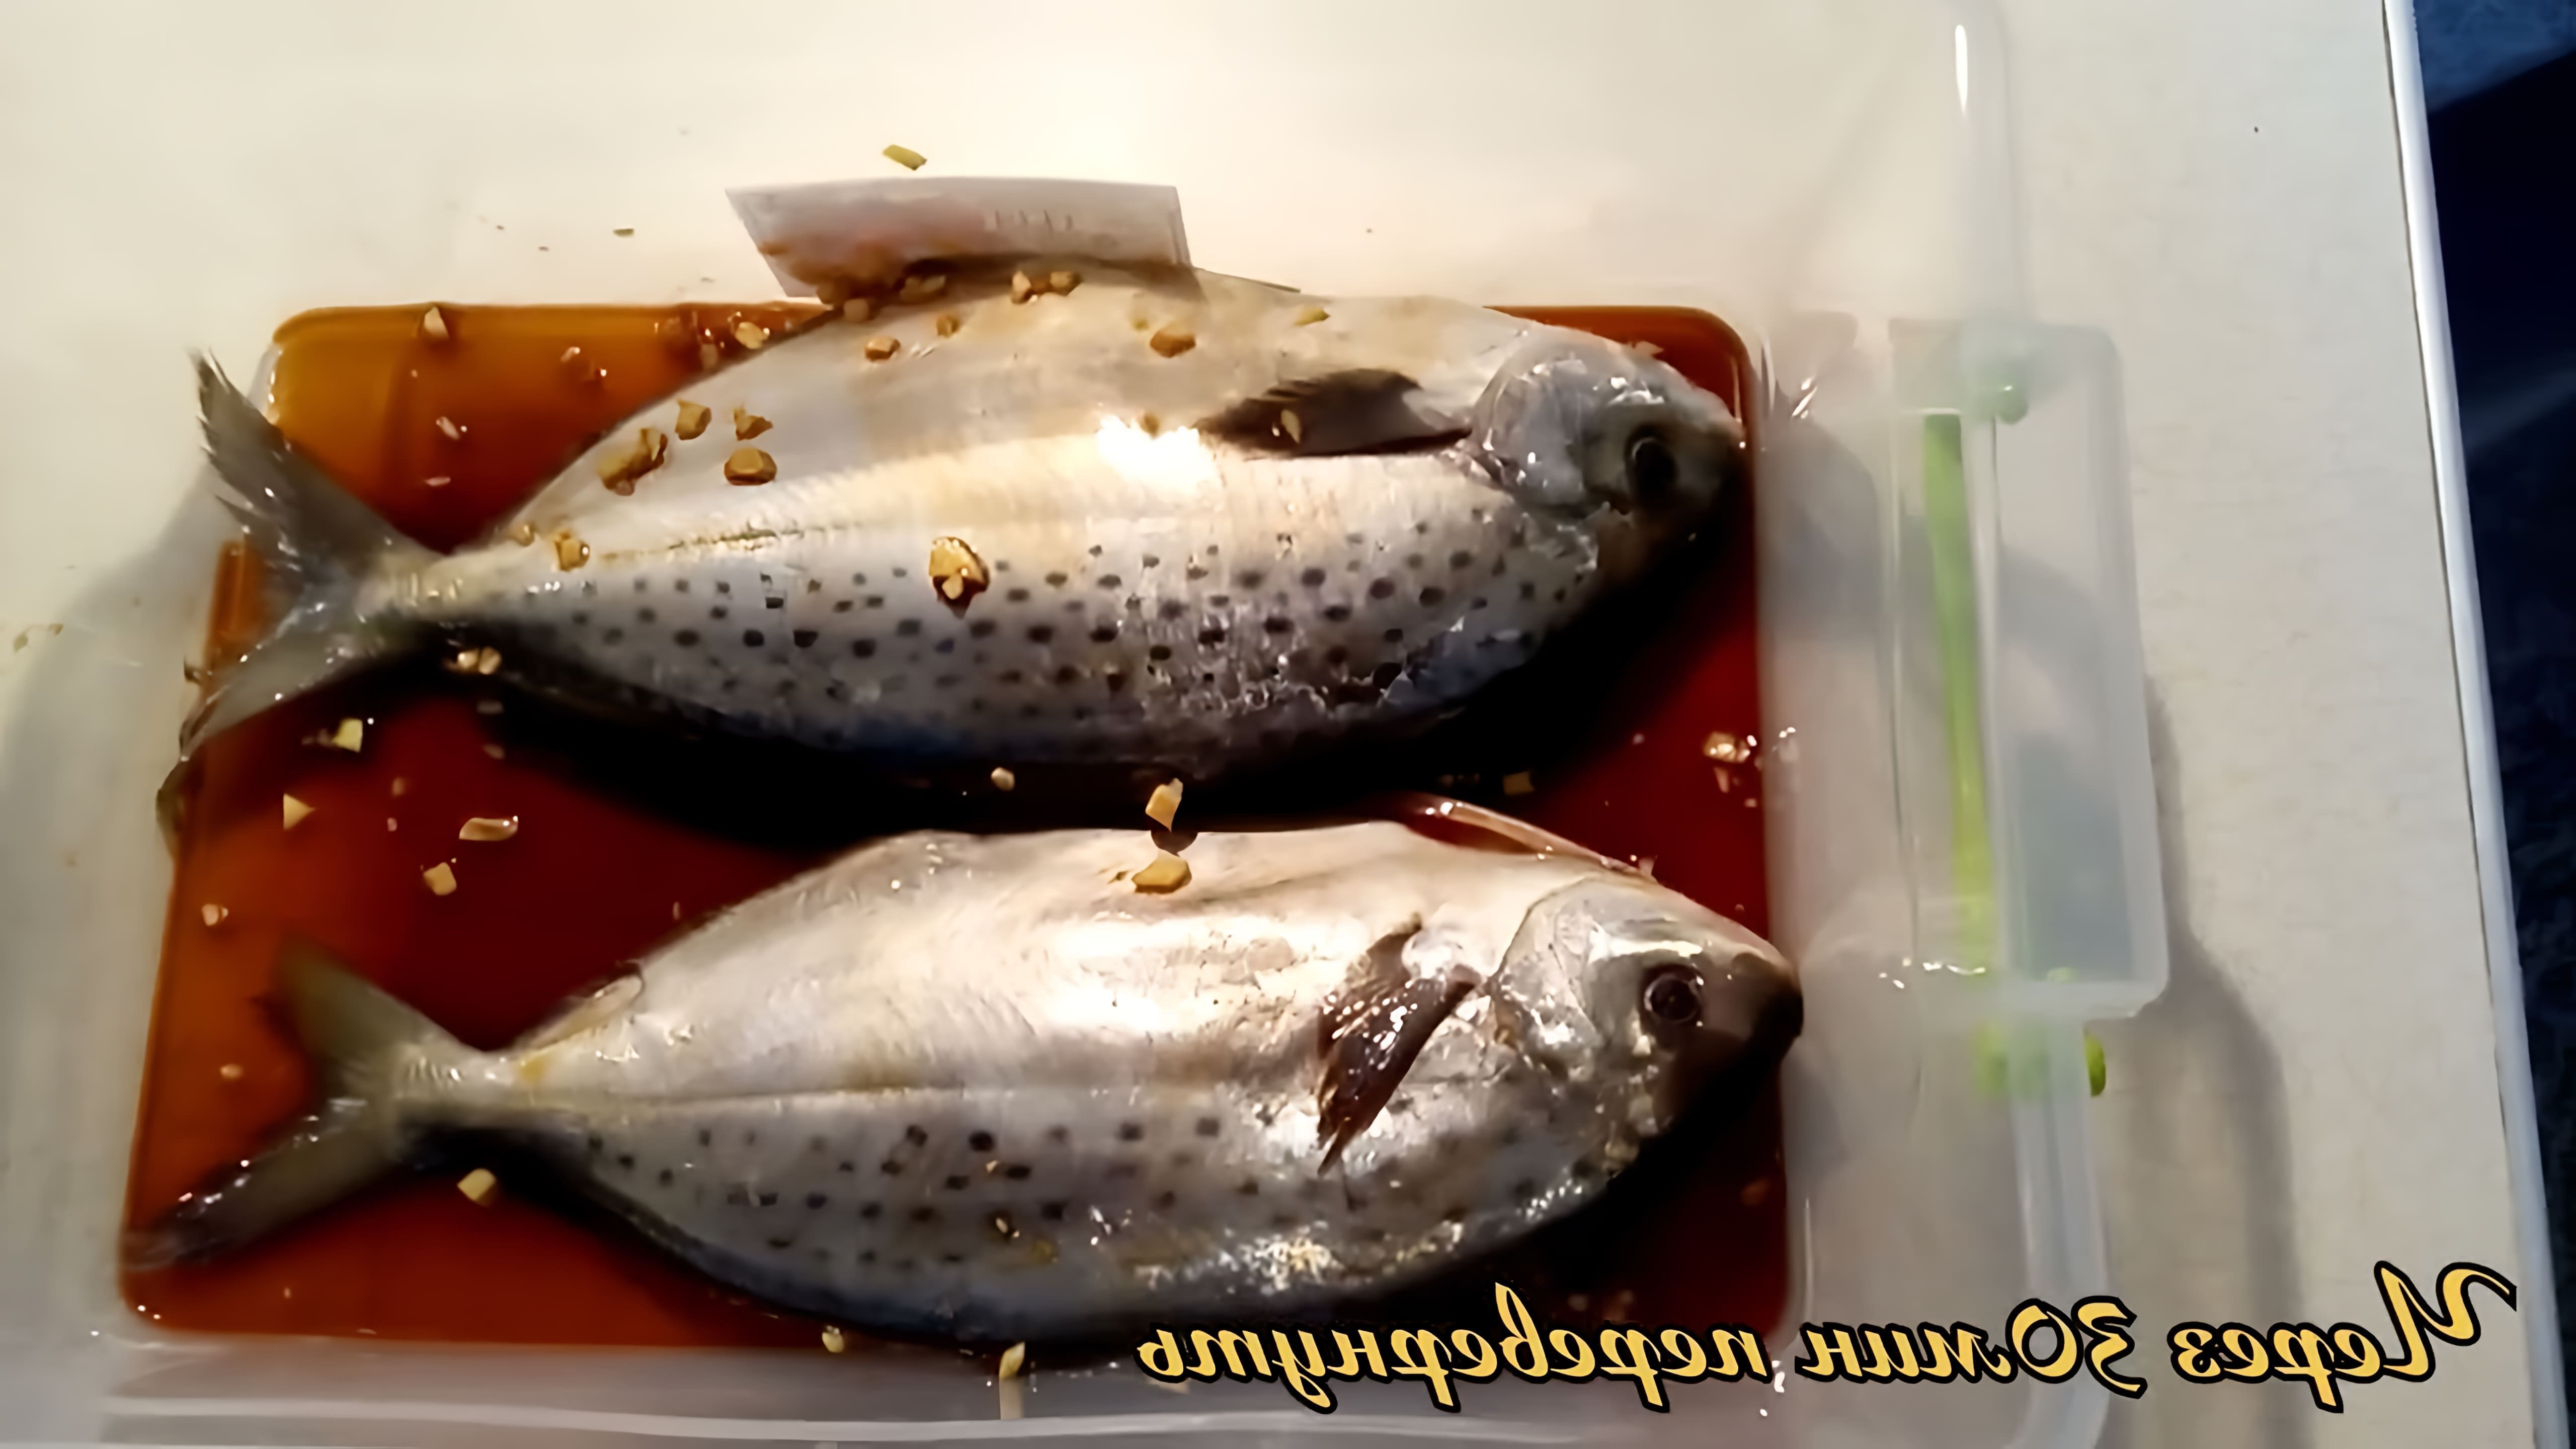 Вкуснятина, рыба Пампанита - это видео-ролик, который показывает процесс приготовления вкусной итальянской рыбы Пампанита